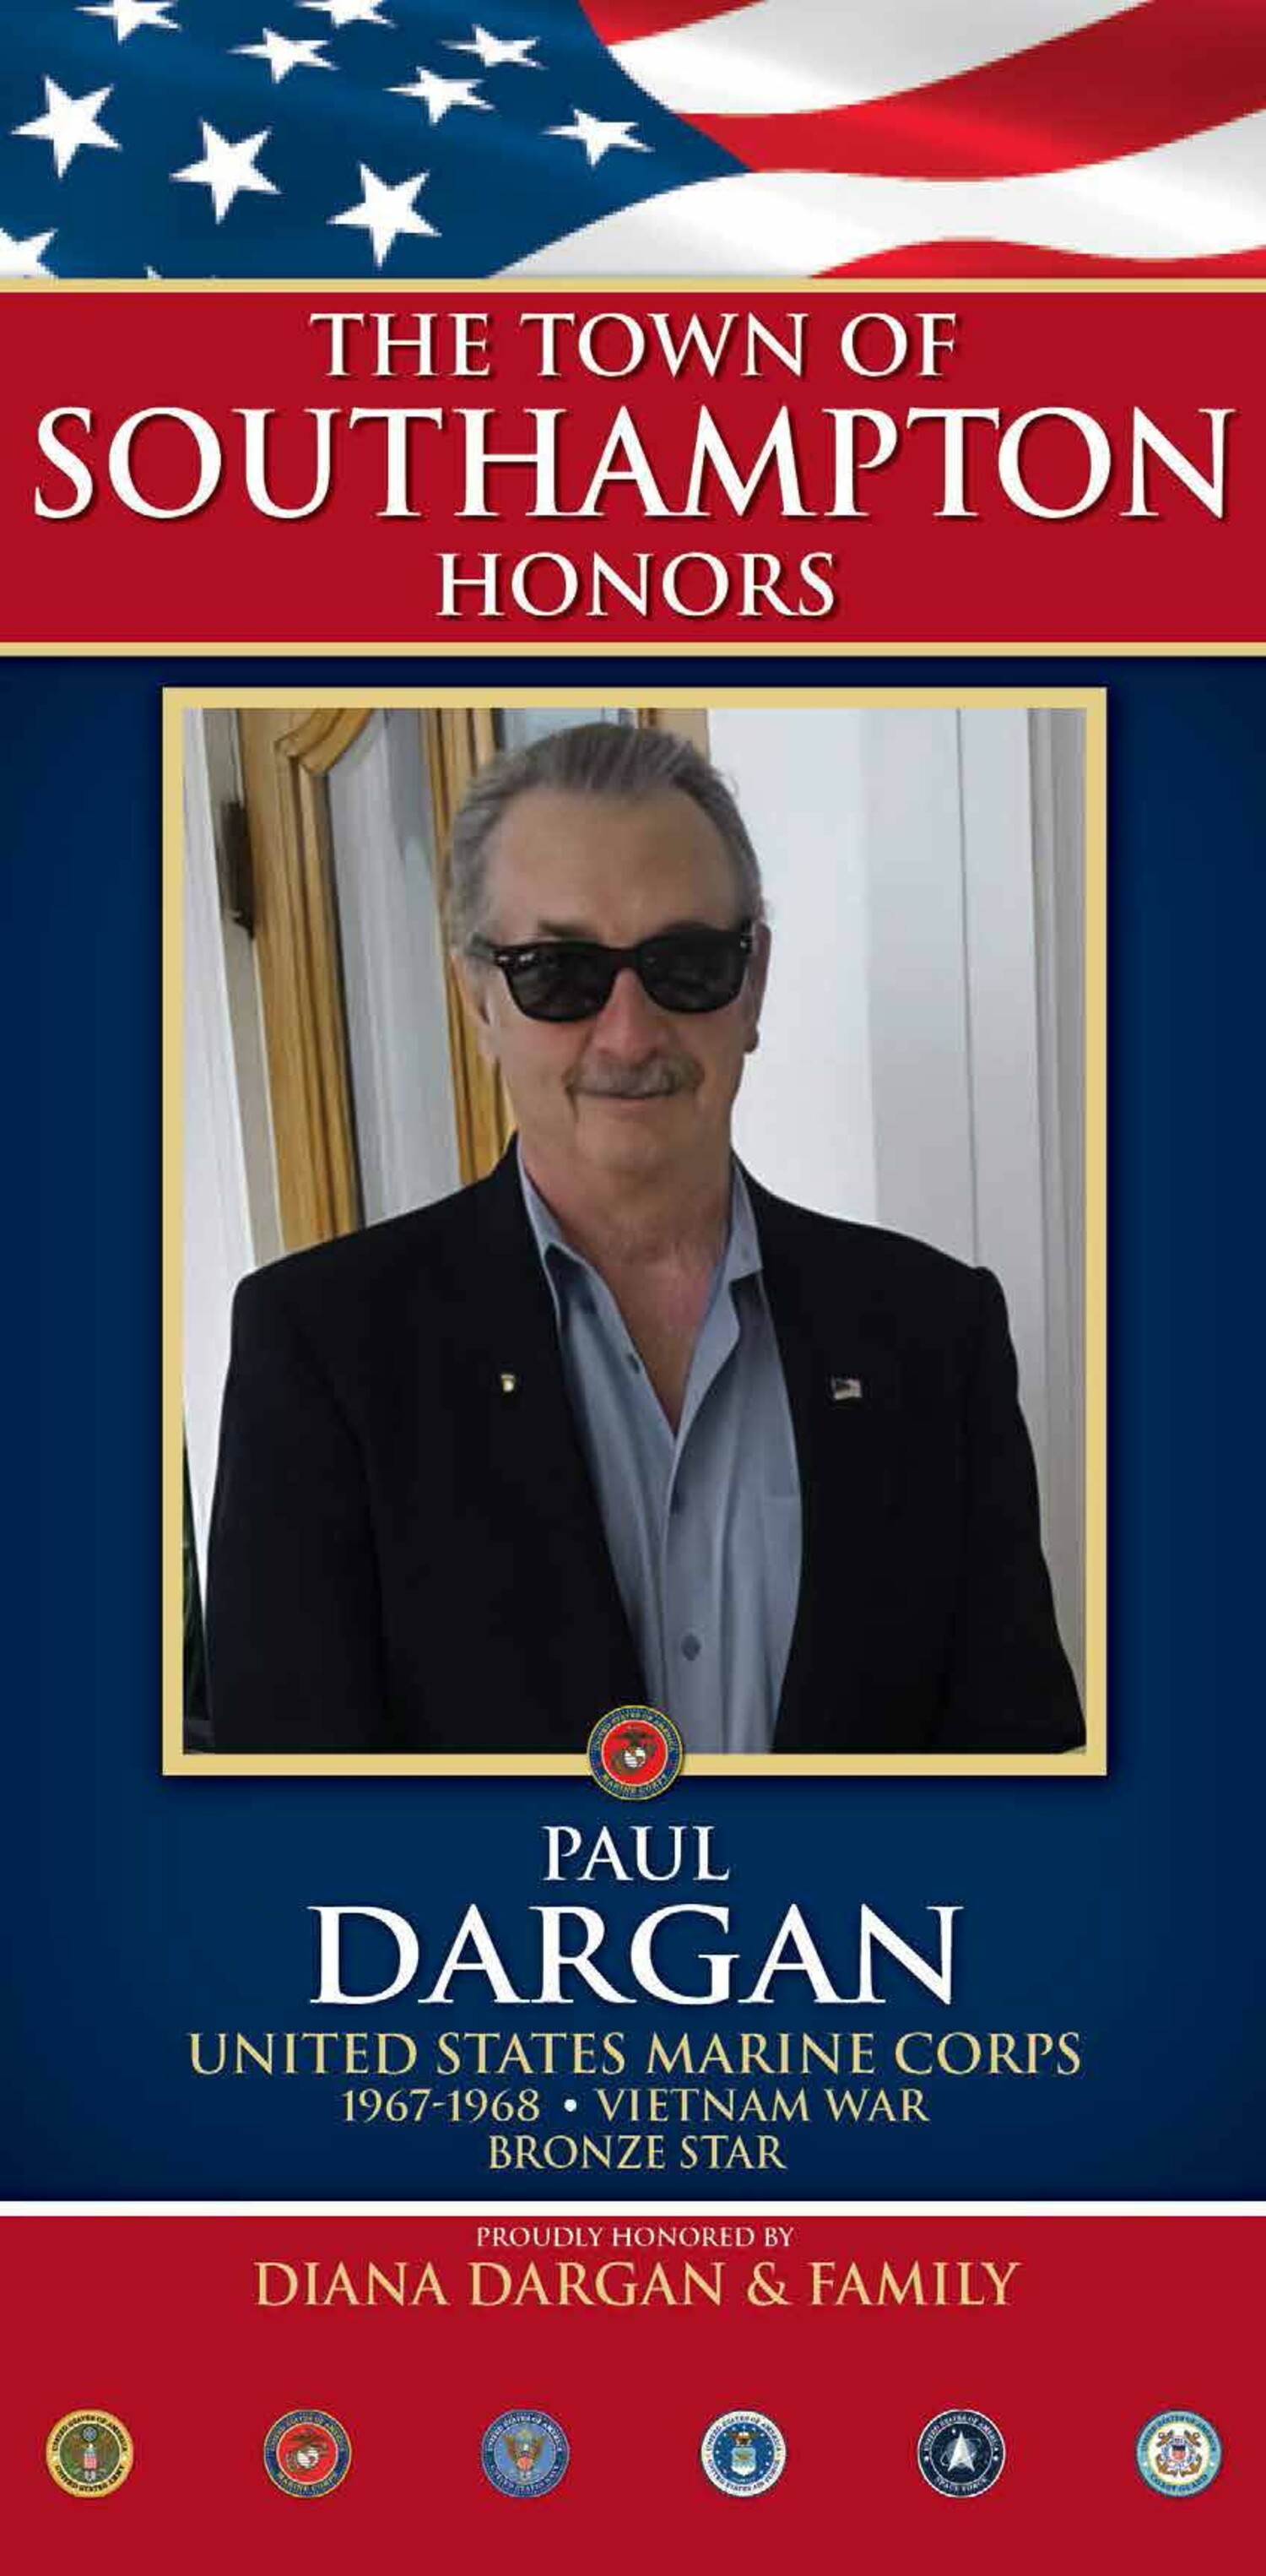 Paul Dargan